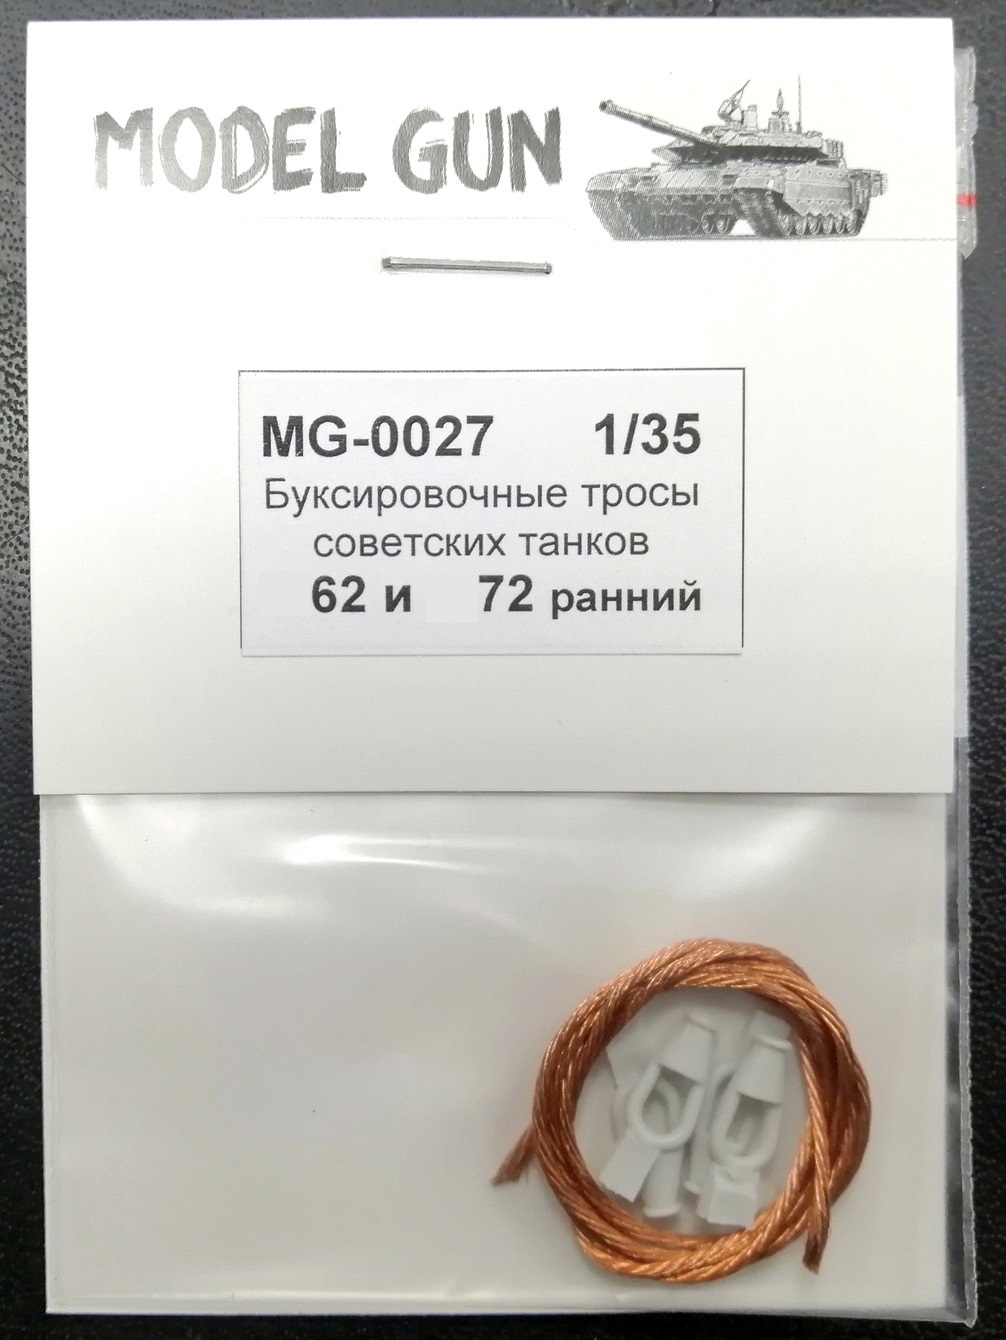 MG-0027  дополнения из металла  Буксир. тросы сов. танков 1960-70-х г. Танк-62/72 (ранний) (1:35)